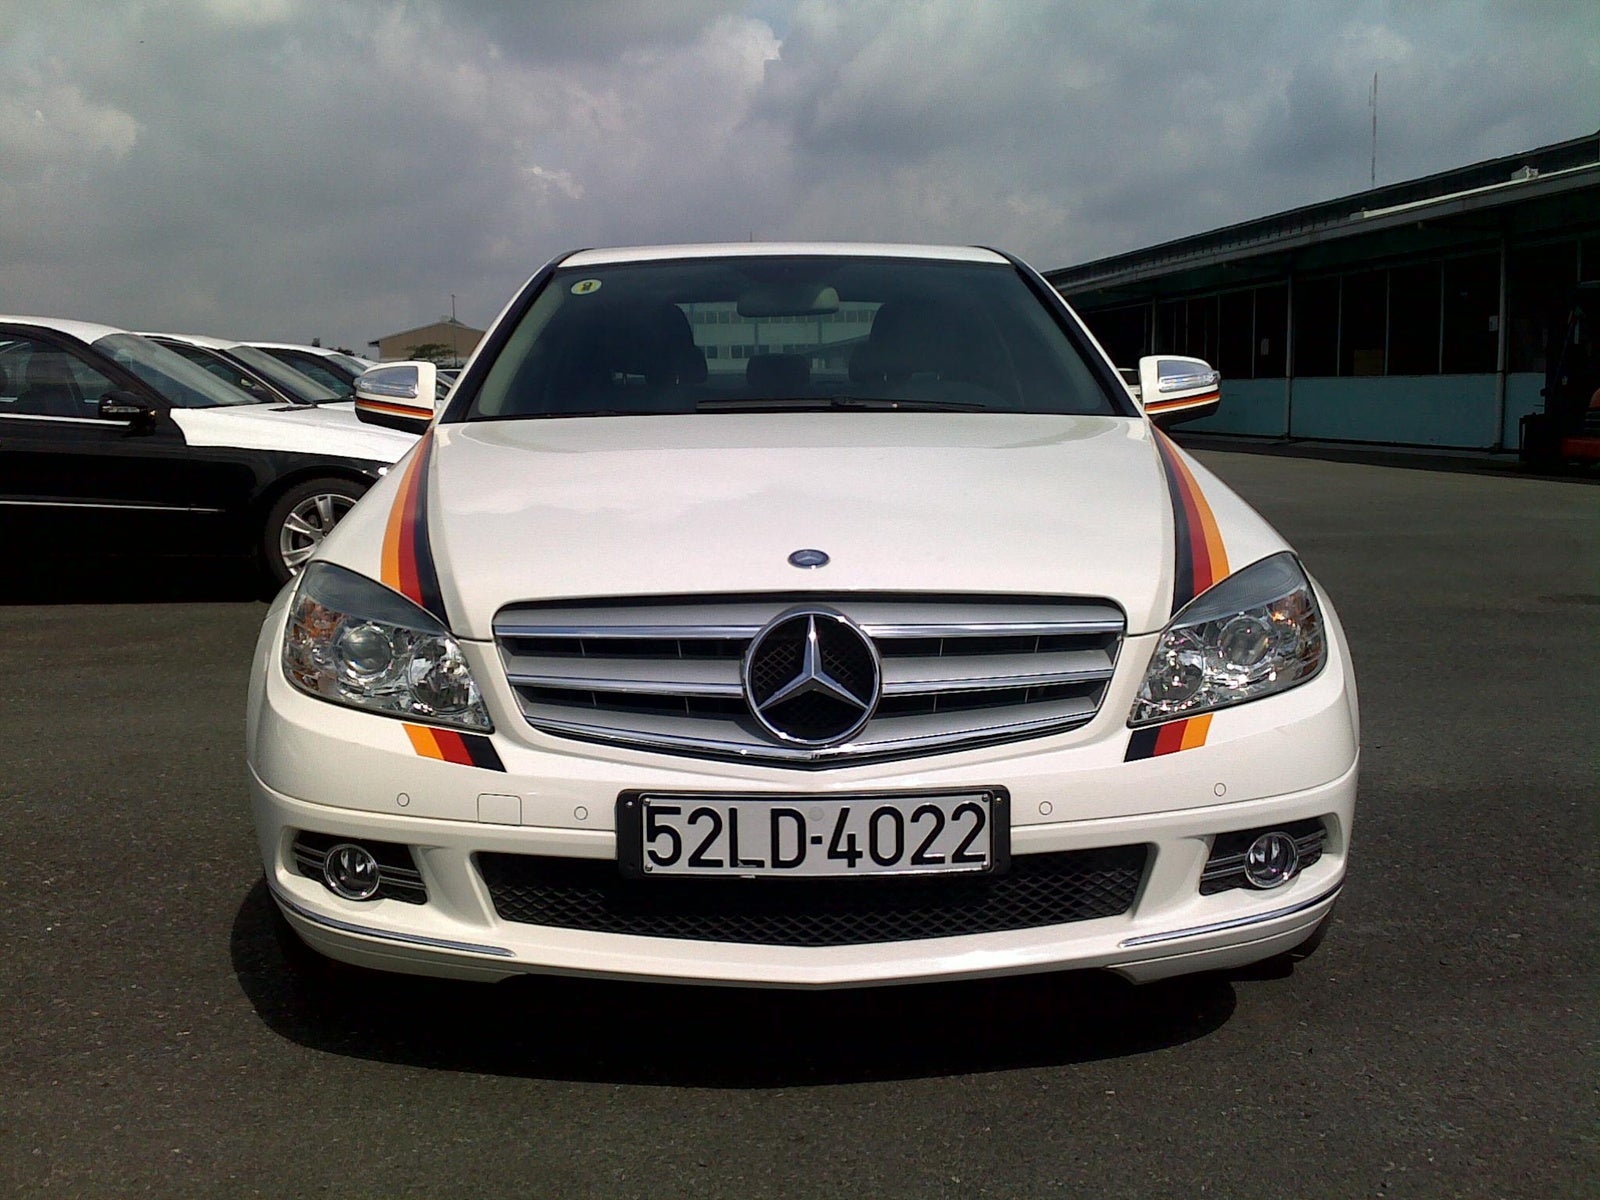 2008 Mercedes benz c300 specs